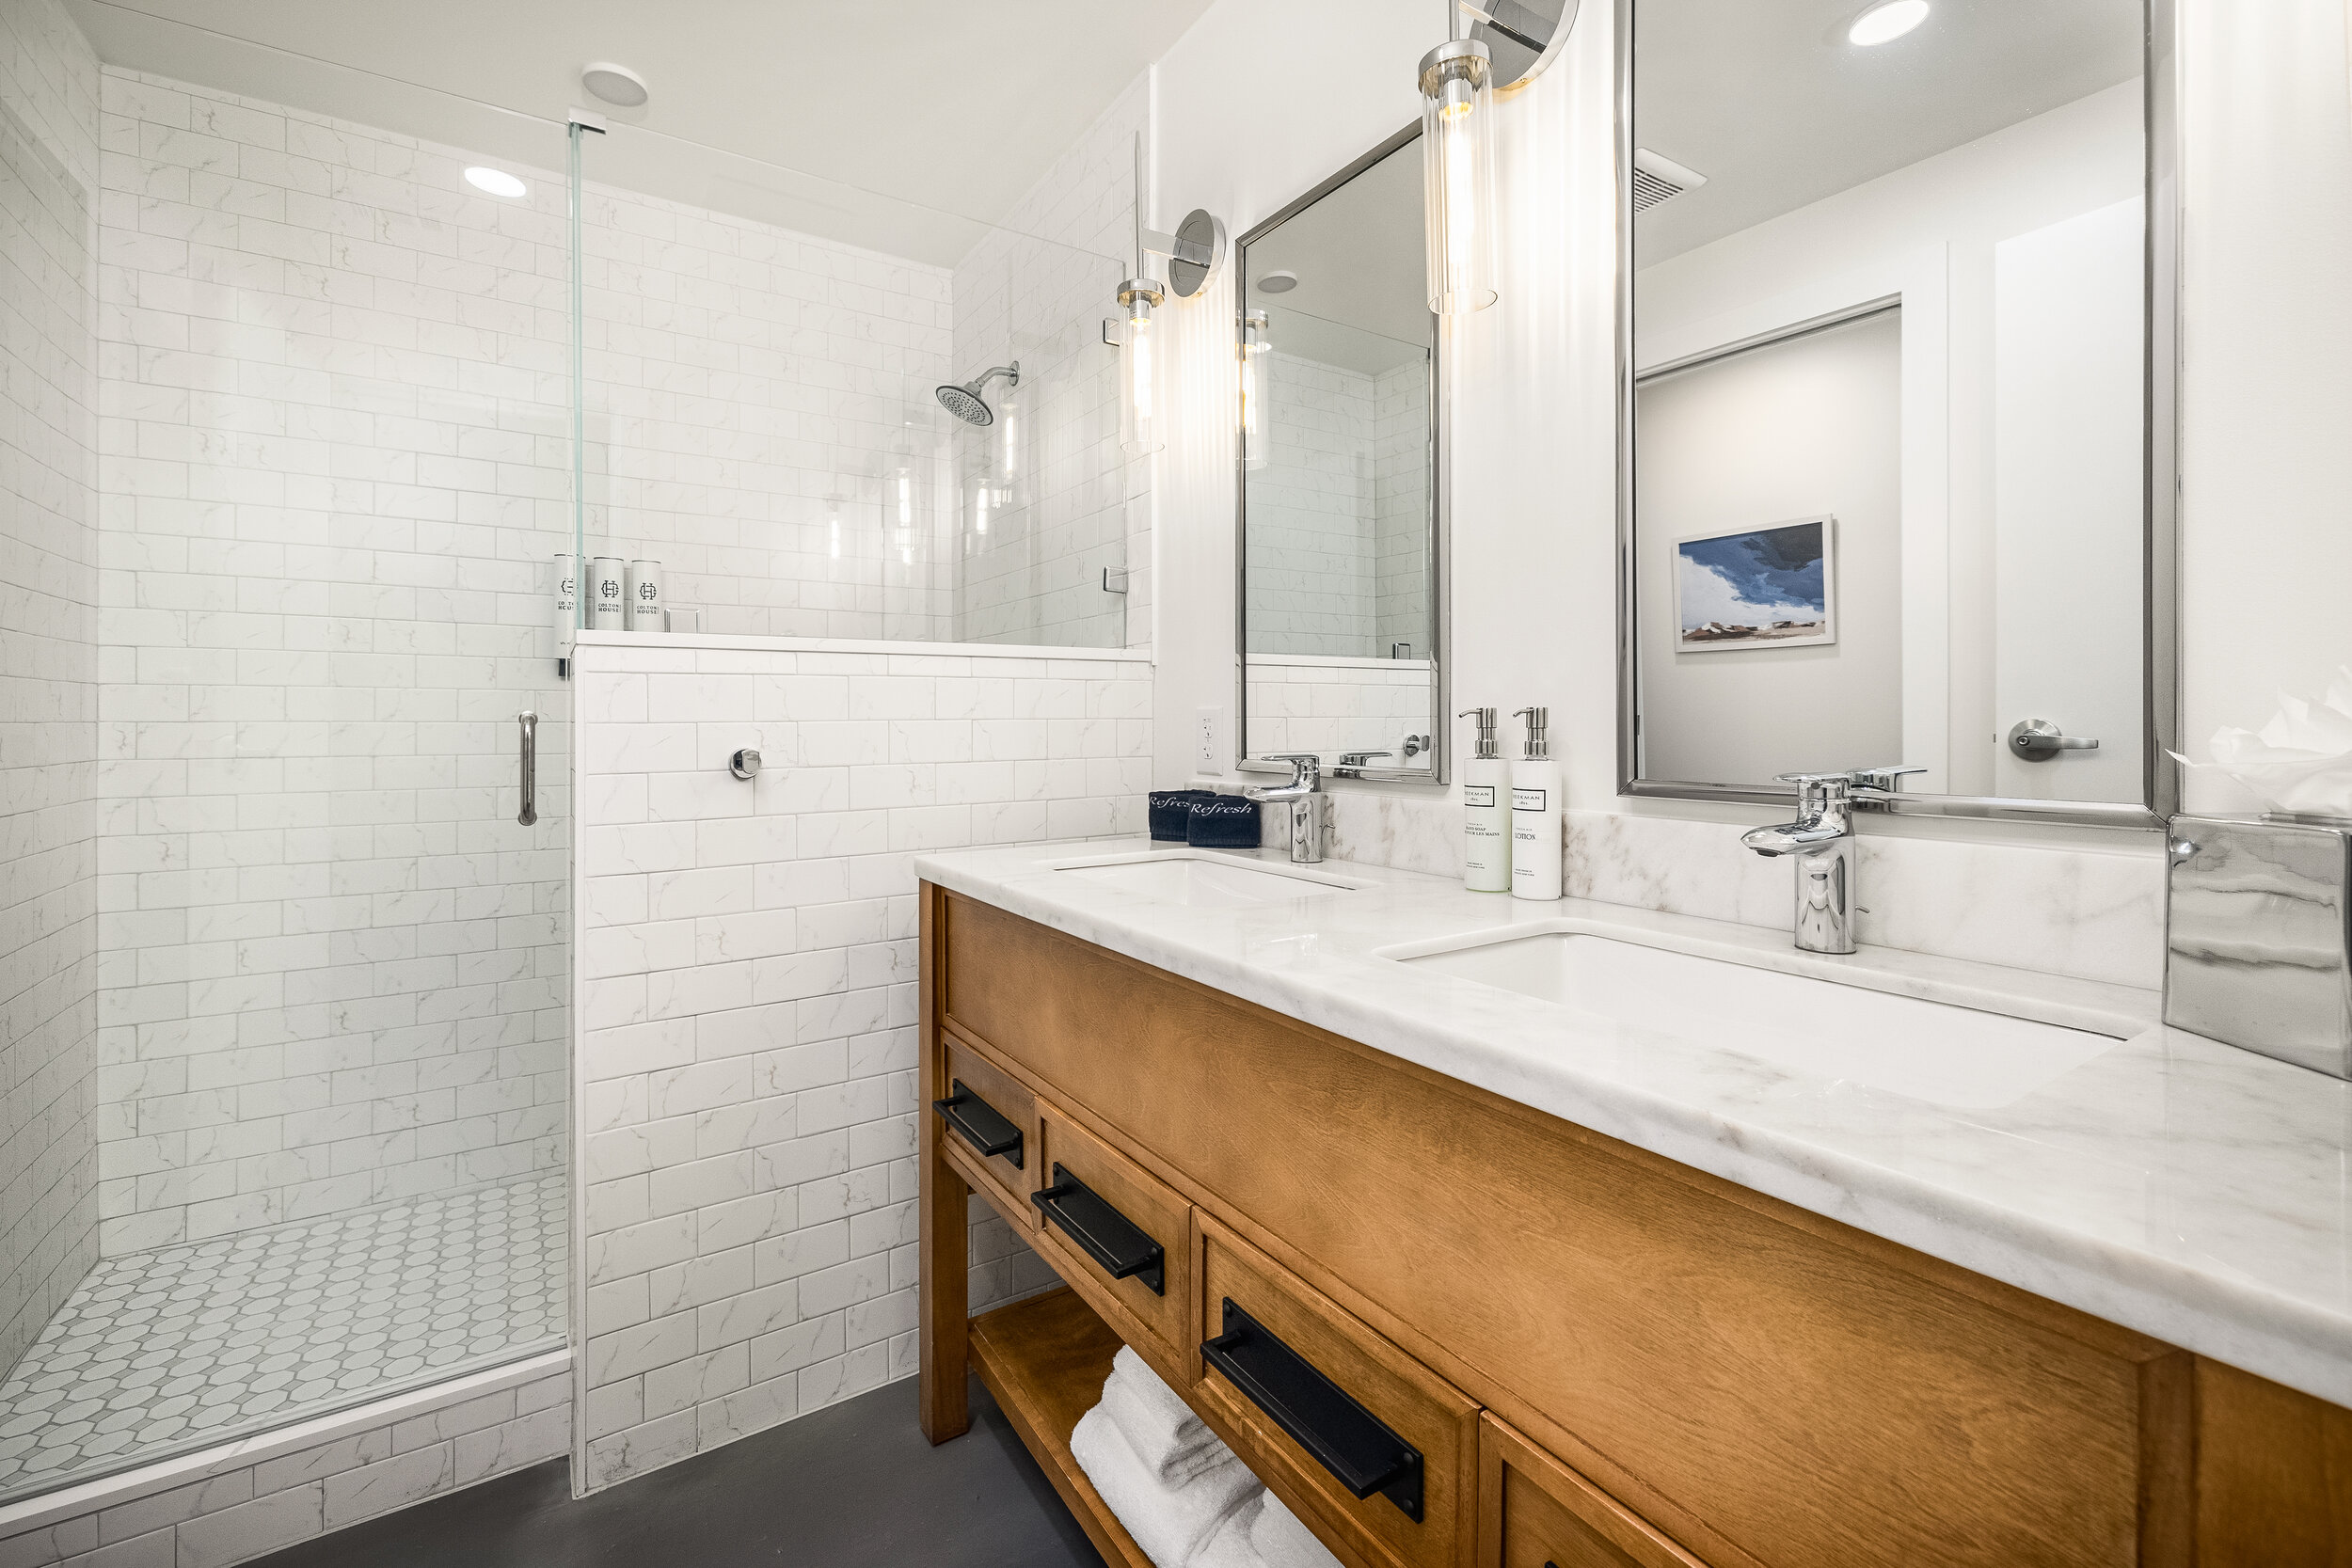 double sink vanity, wooden drawers, walk-in shower with glass door